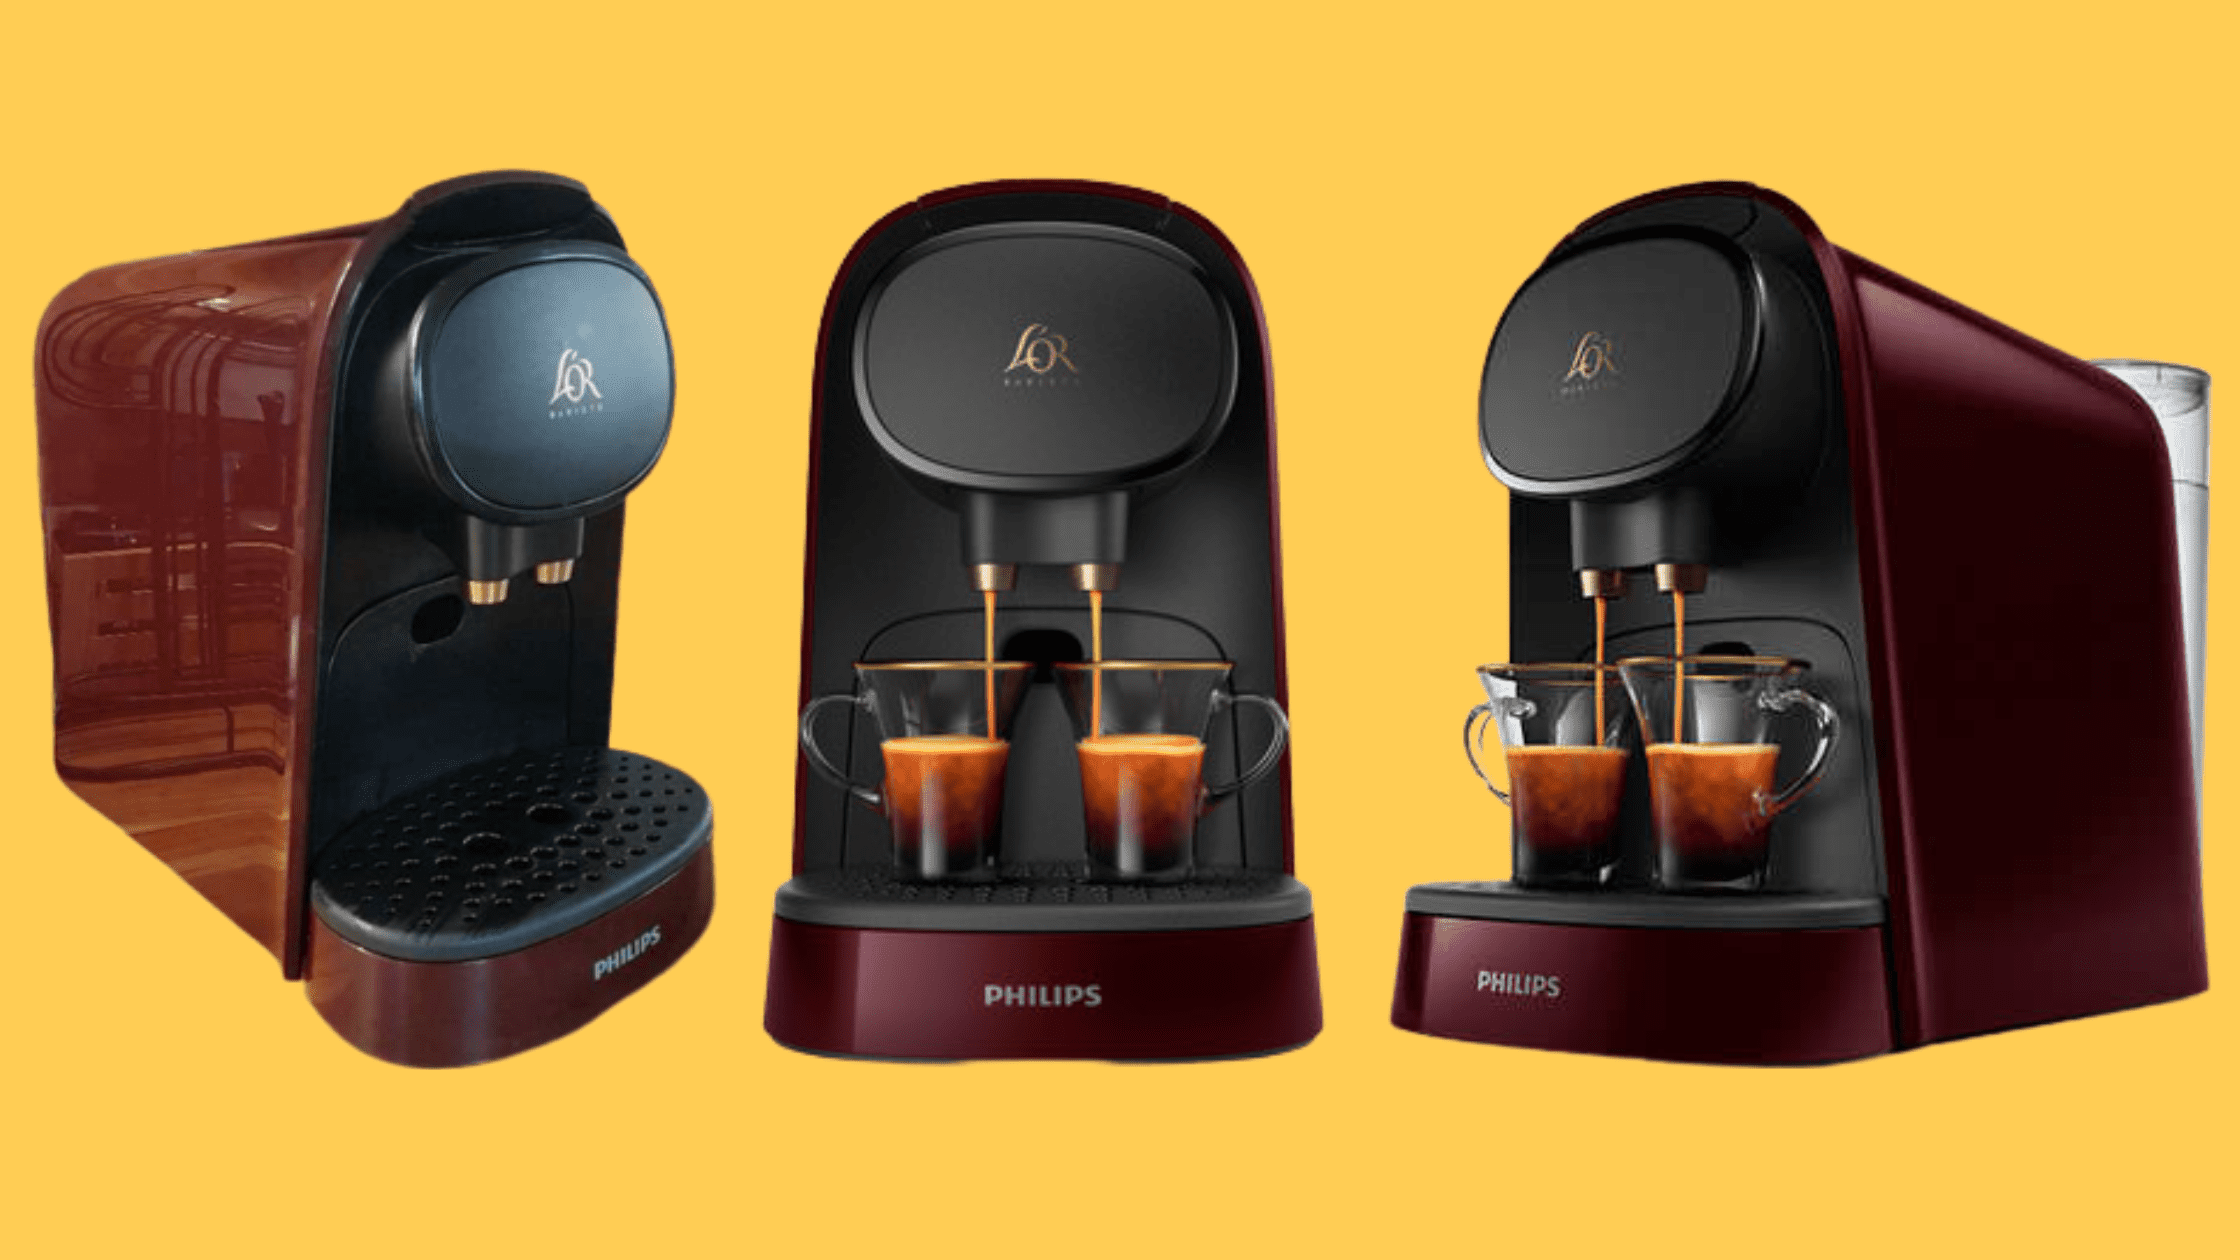 La machine à café capsules l'Or Barista de Philips : Le Test